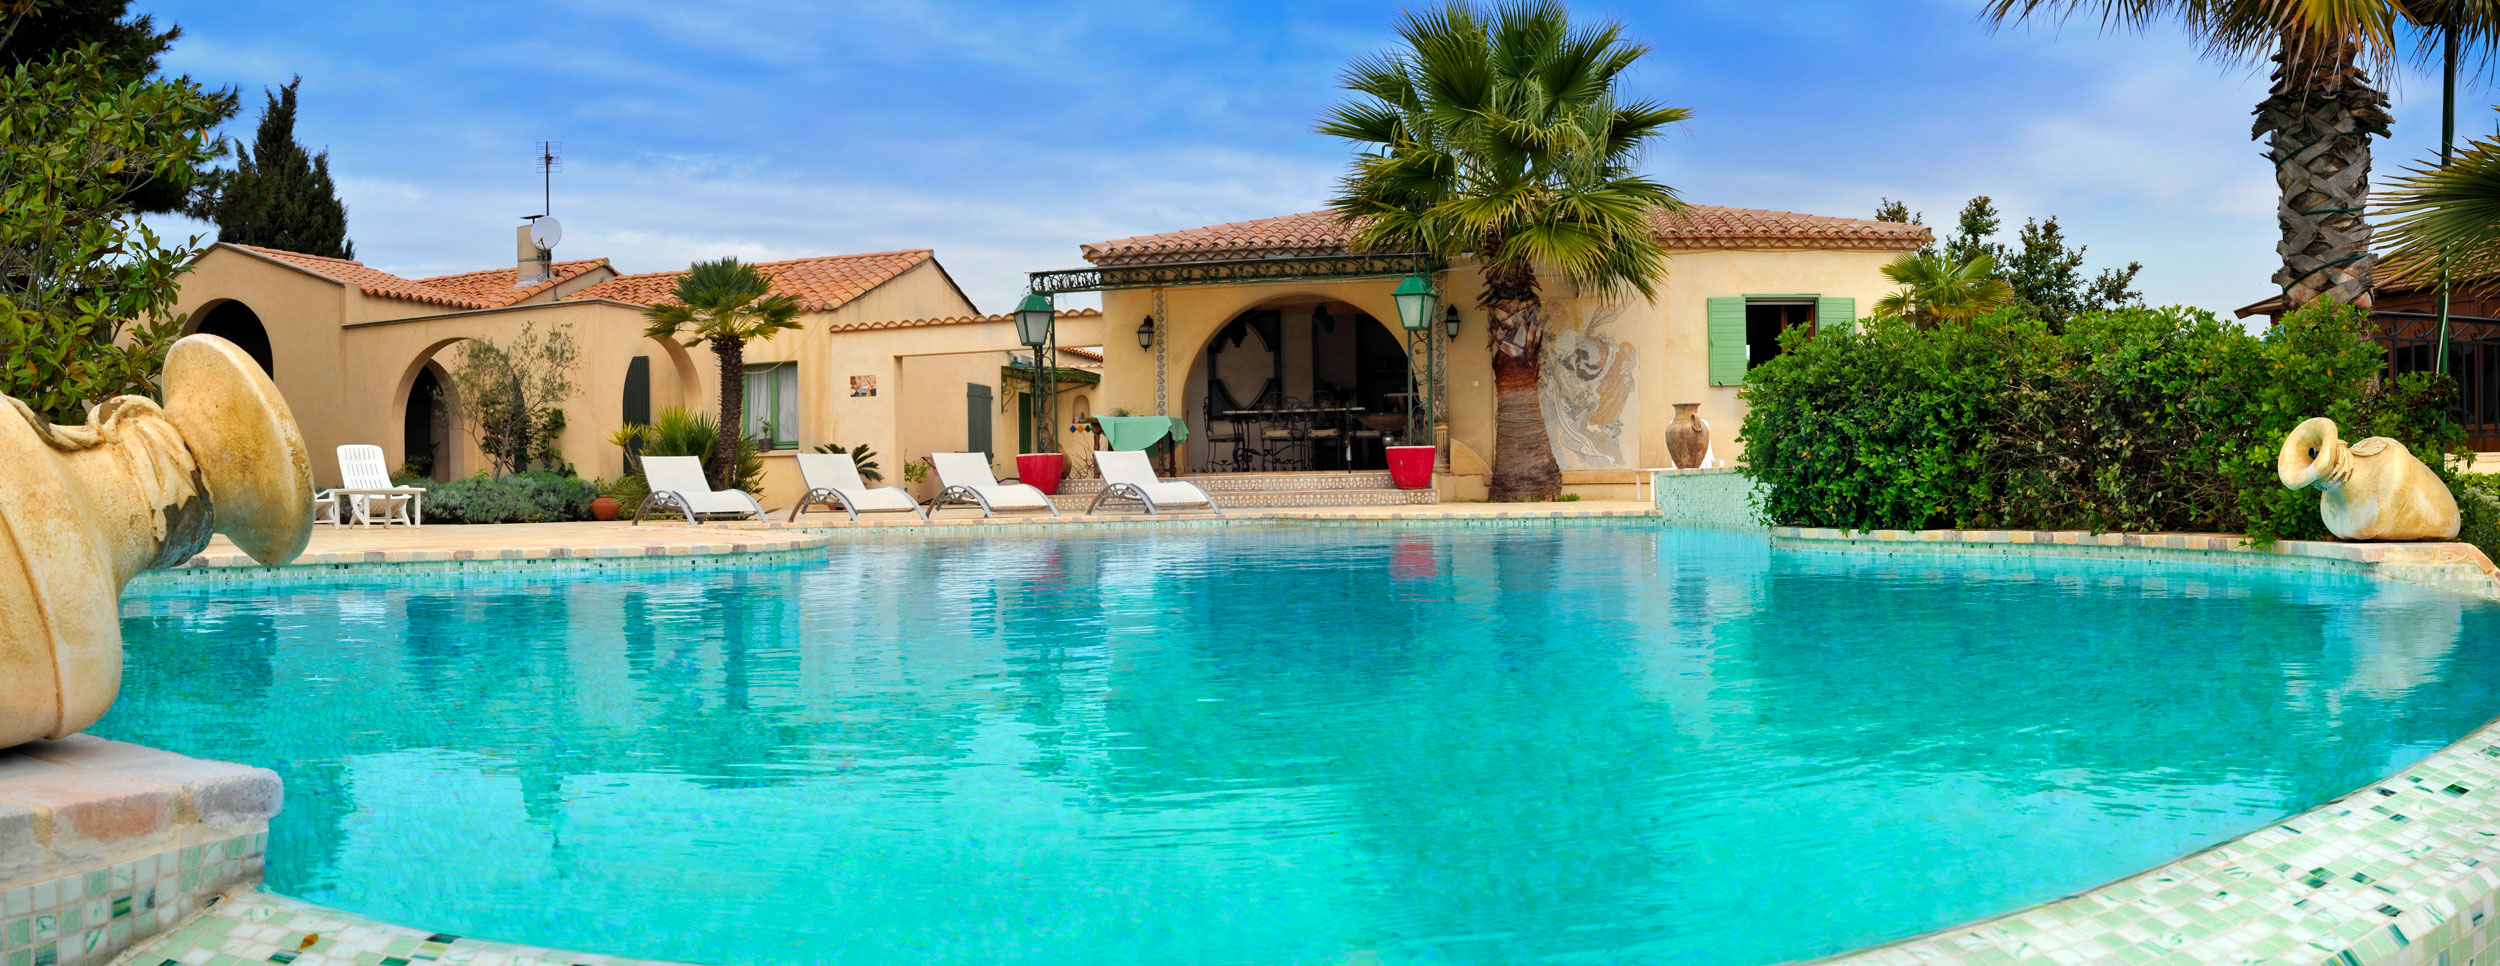 Quel est le prix d'une piscine au m² ? © Tilio & Paolo, Adobe Stock